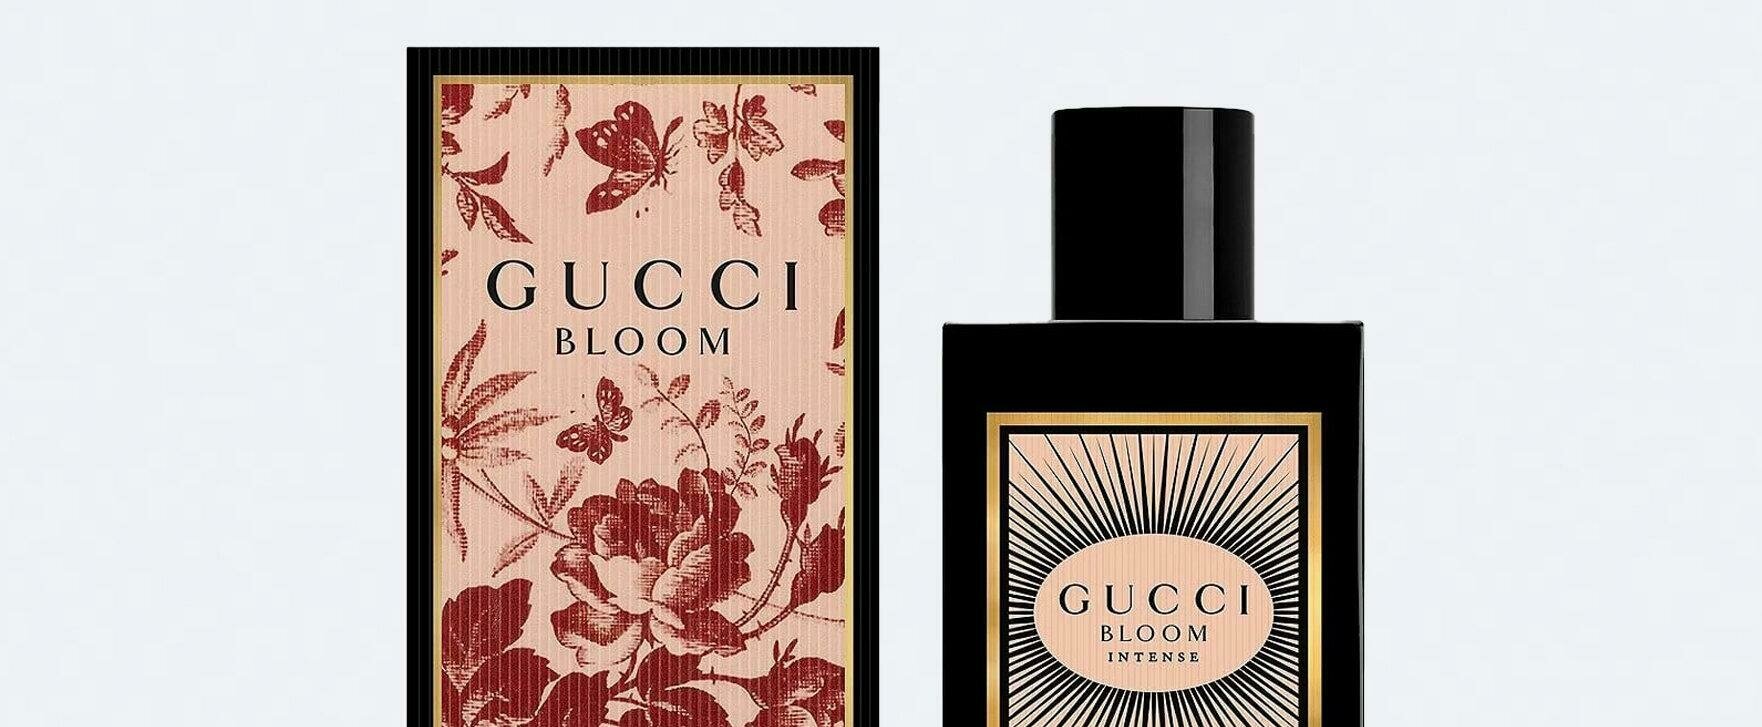 „Gucci Bloom Intense“: Die intensivierte Version des beliebten Parfums „Bloom" von Gucci